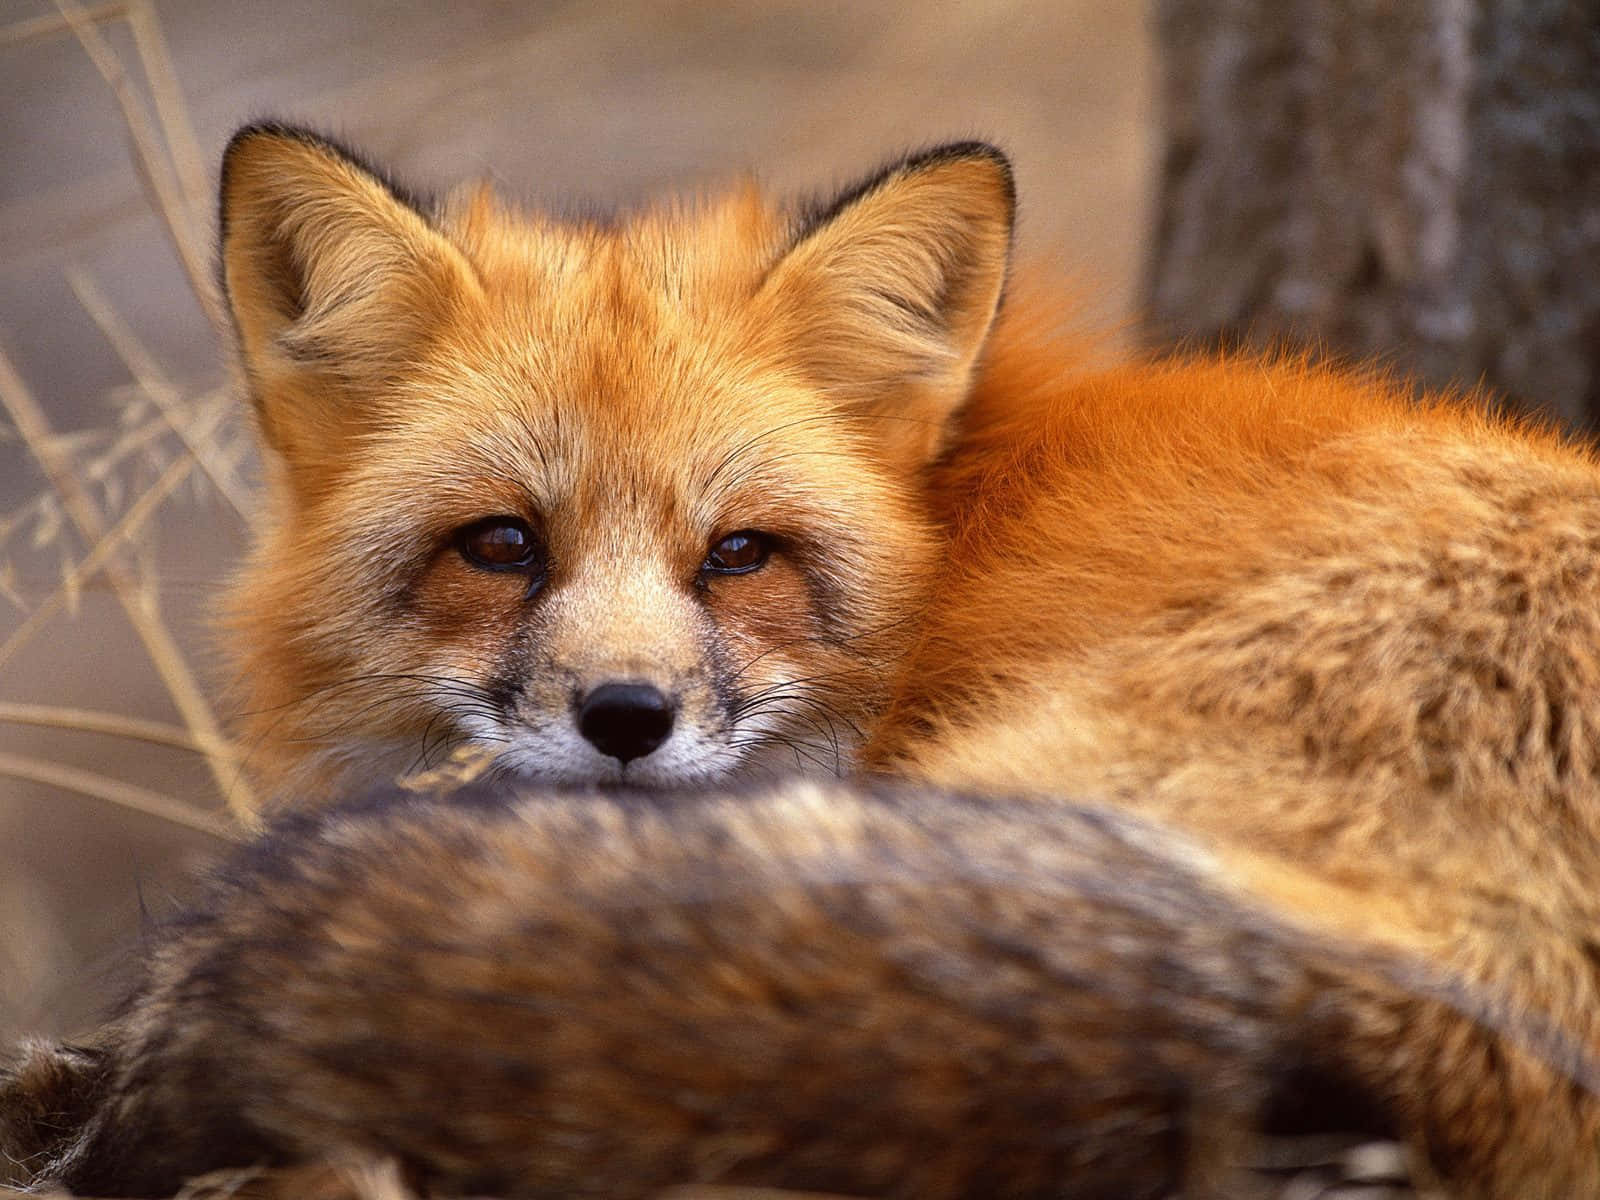 Einfaszinierender Blick Auf Einen Fuchs In Seinem Natürlichen Lebensraum